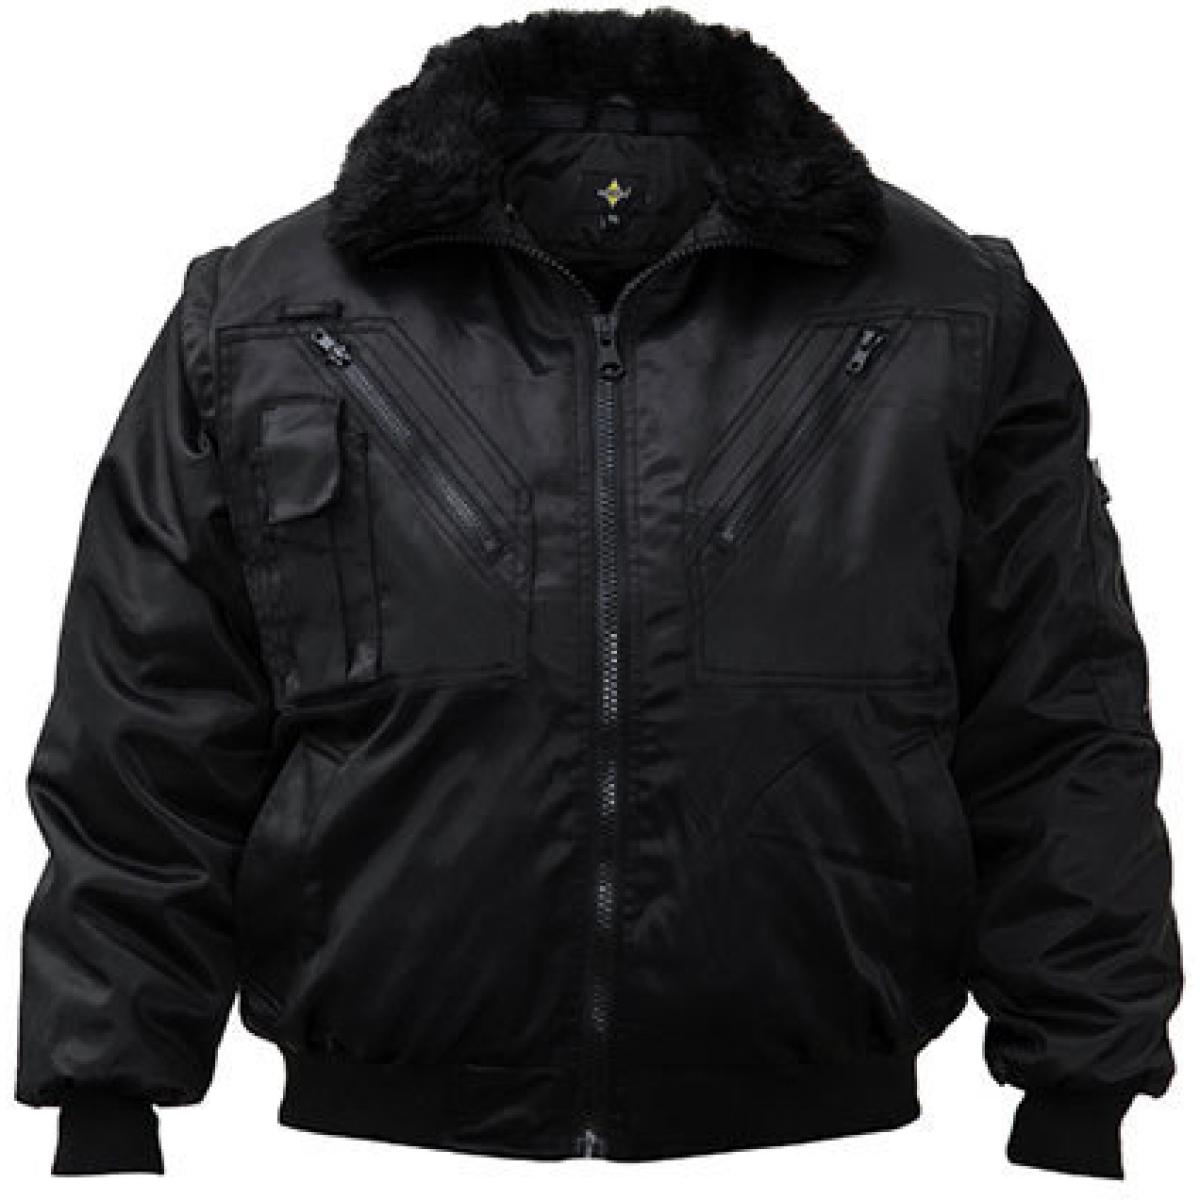 Hersteller: Korntex Herstellernummer: KXPJ Artikelbezeichnung: Pilot Jacket, Vier-in-eins Pilotenjacke Farbe: Black